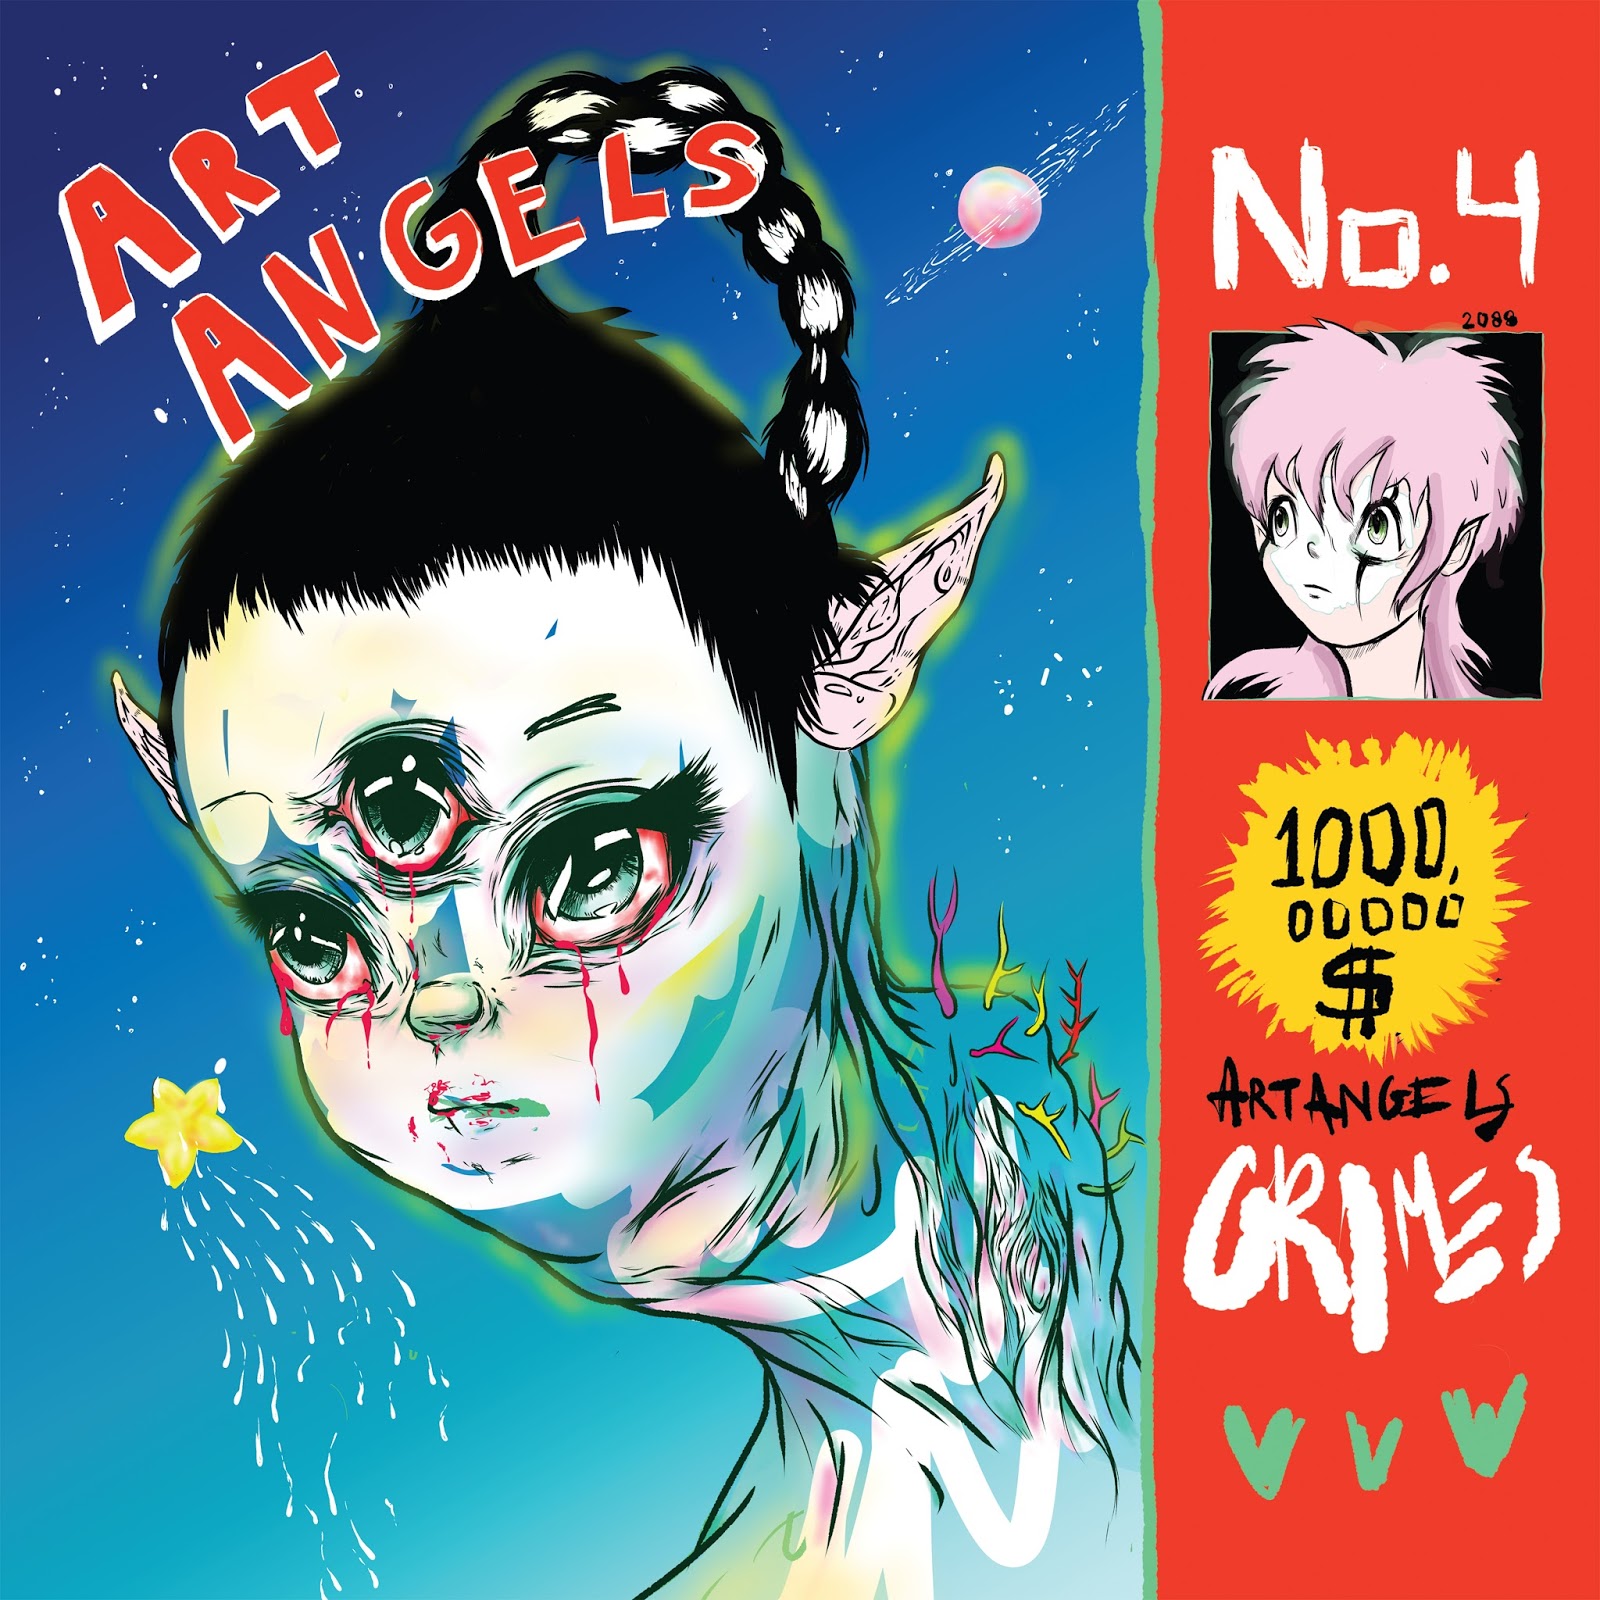 Grimes Art Angels Culturedarm